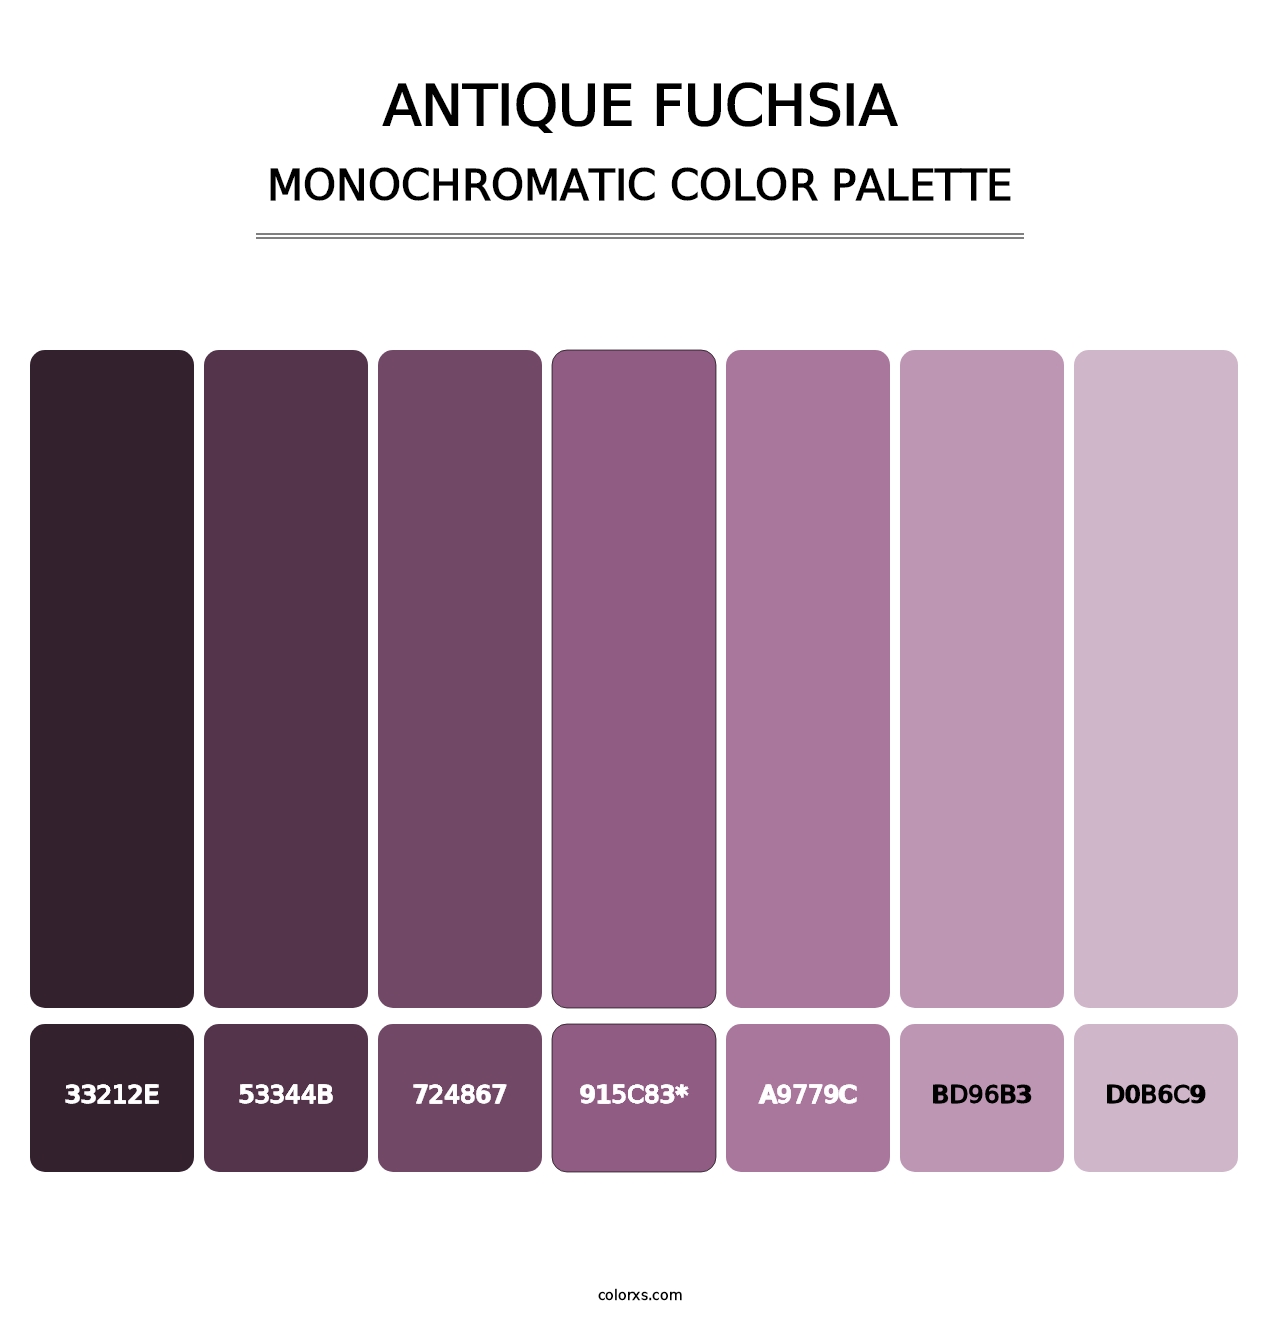 Antique Fuchsia - Monochromatic Color Palette